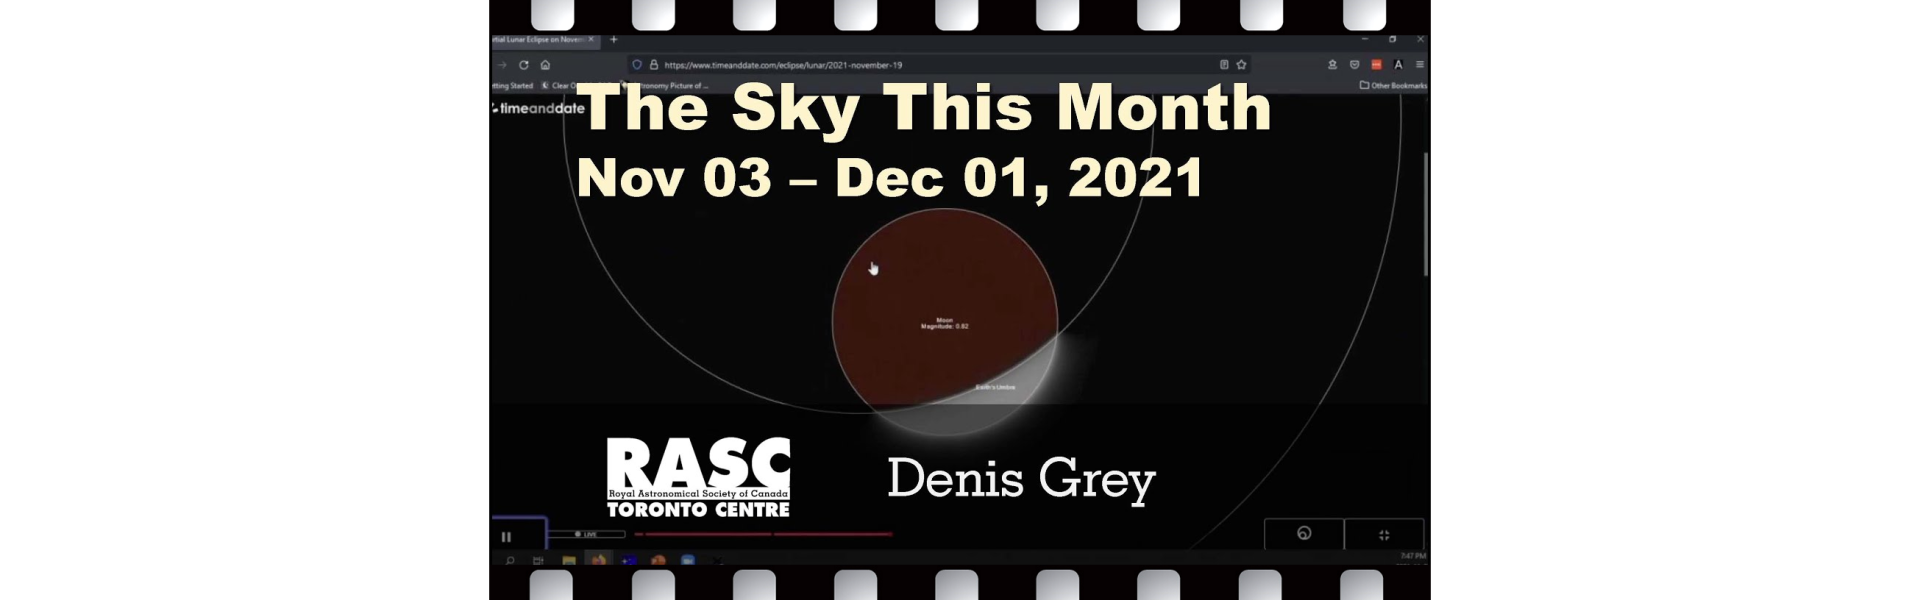 The Sky This Month for Nov 3 - Dec 1, 2021